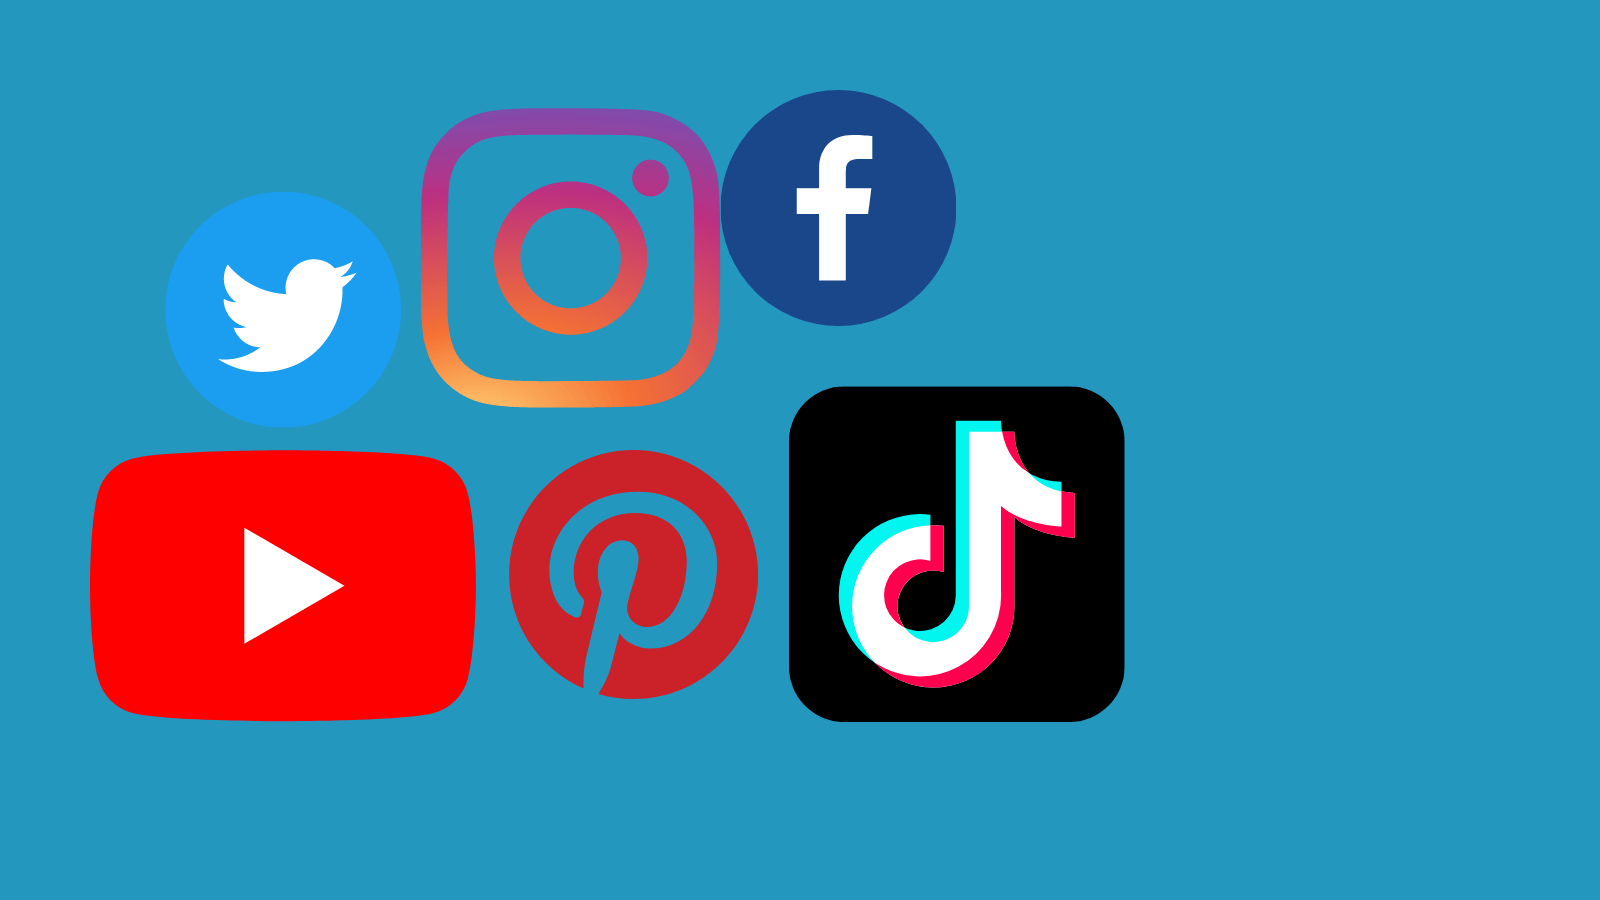 Logos of Twitter, Instagram, Facebook, YouTube, Pinterest, and TikTok